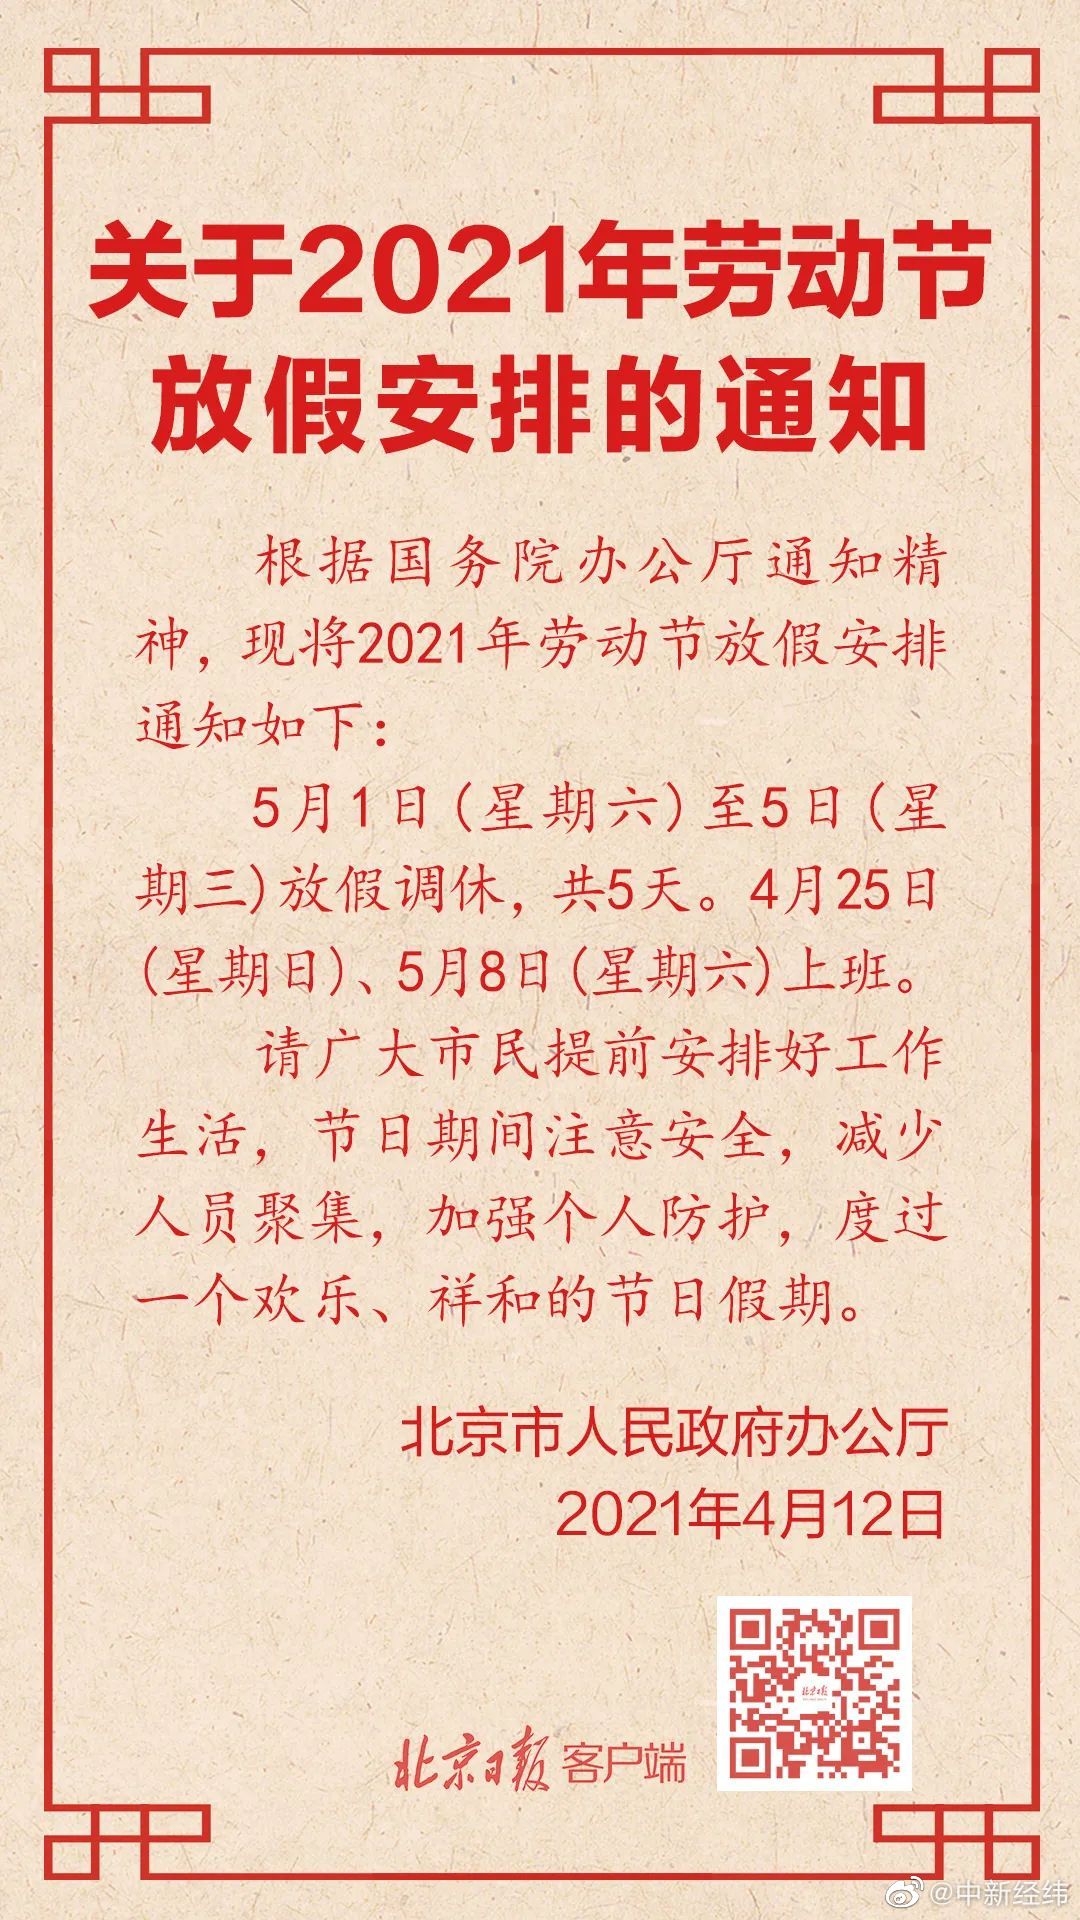 4月12日,北京市人民政府办公厅正式发布2021年五一劳动节放假安排的